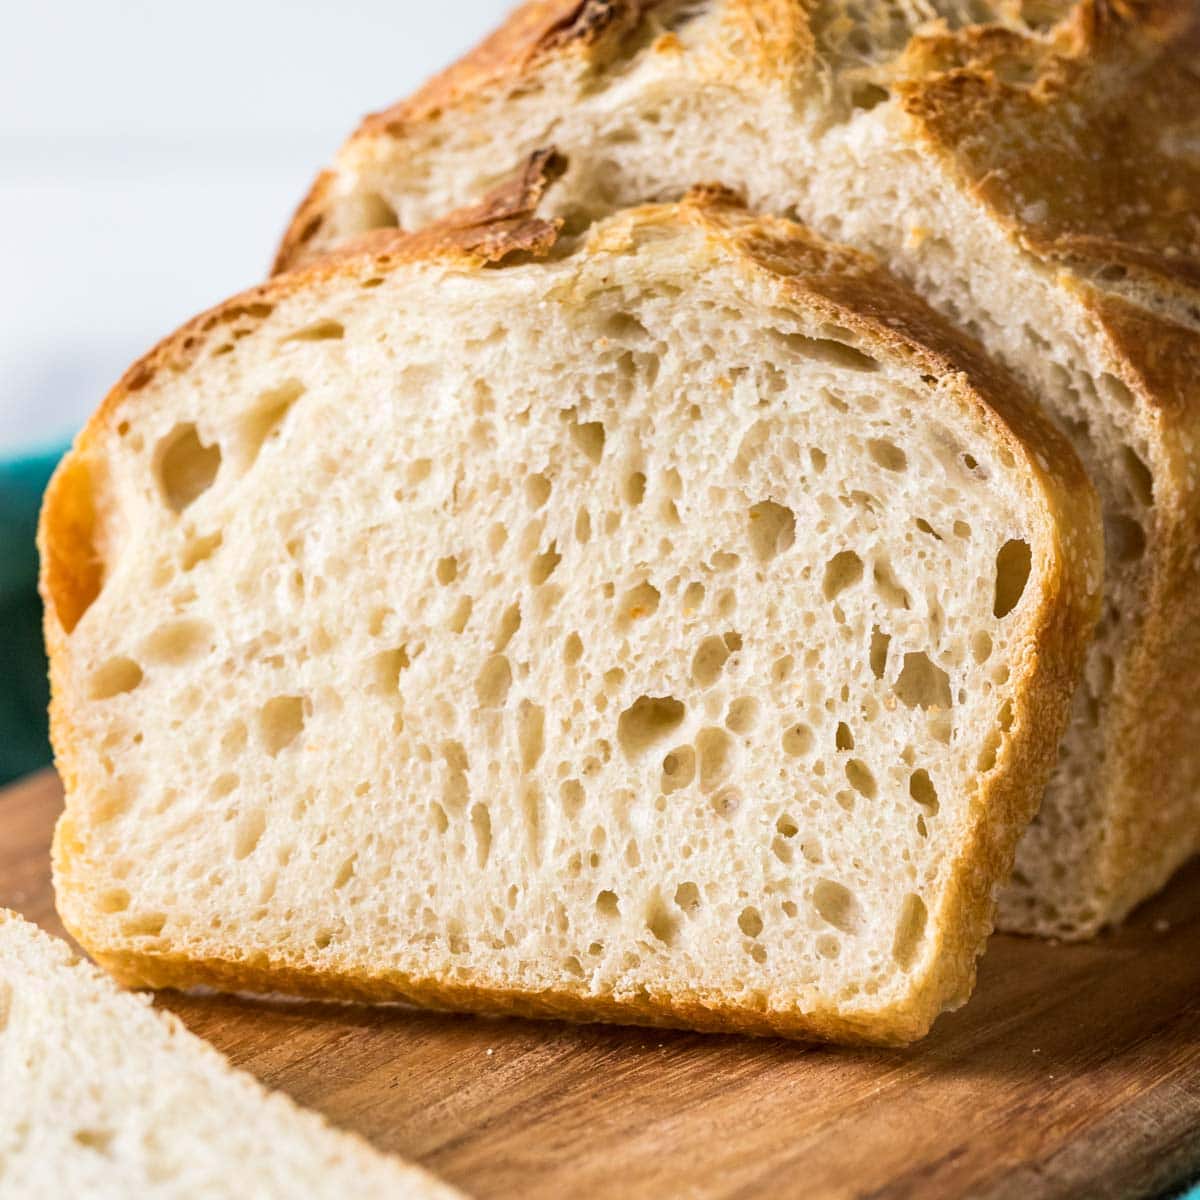 https://sugarspunrun.com/wp-content/uploads/2023/02/My-sourdough-bread-recipe-1-of-1.jpg